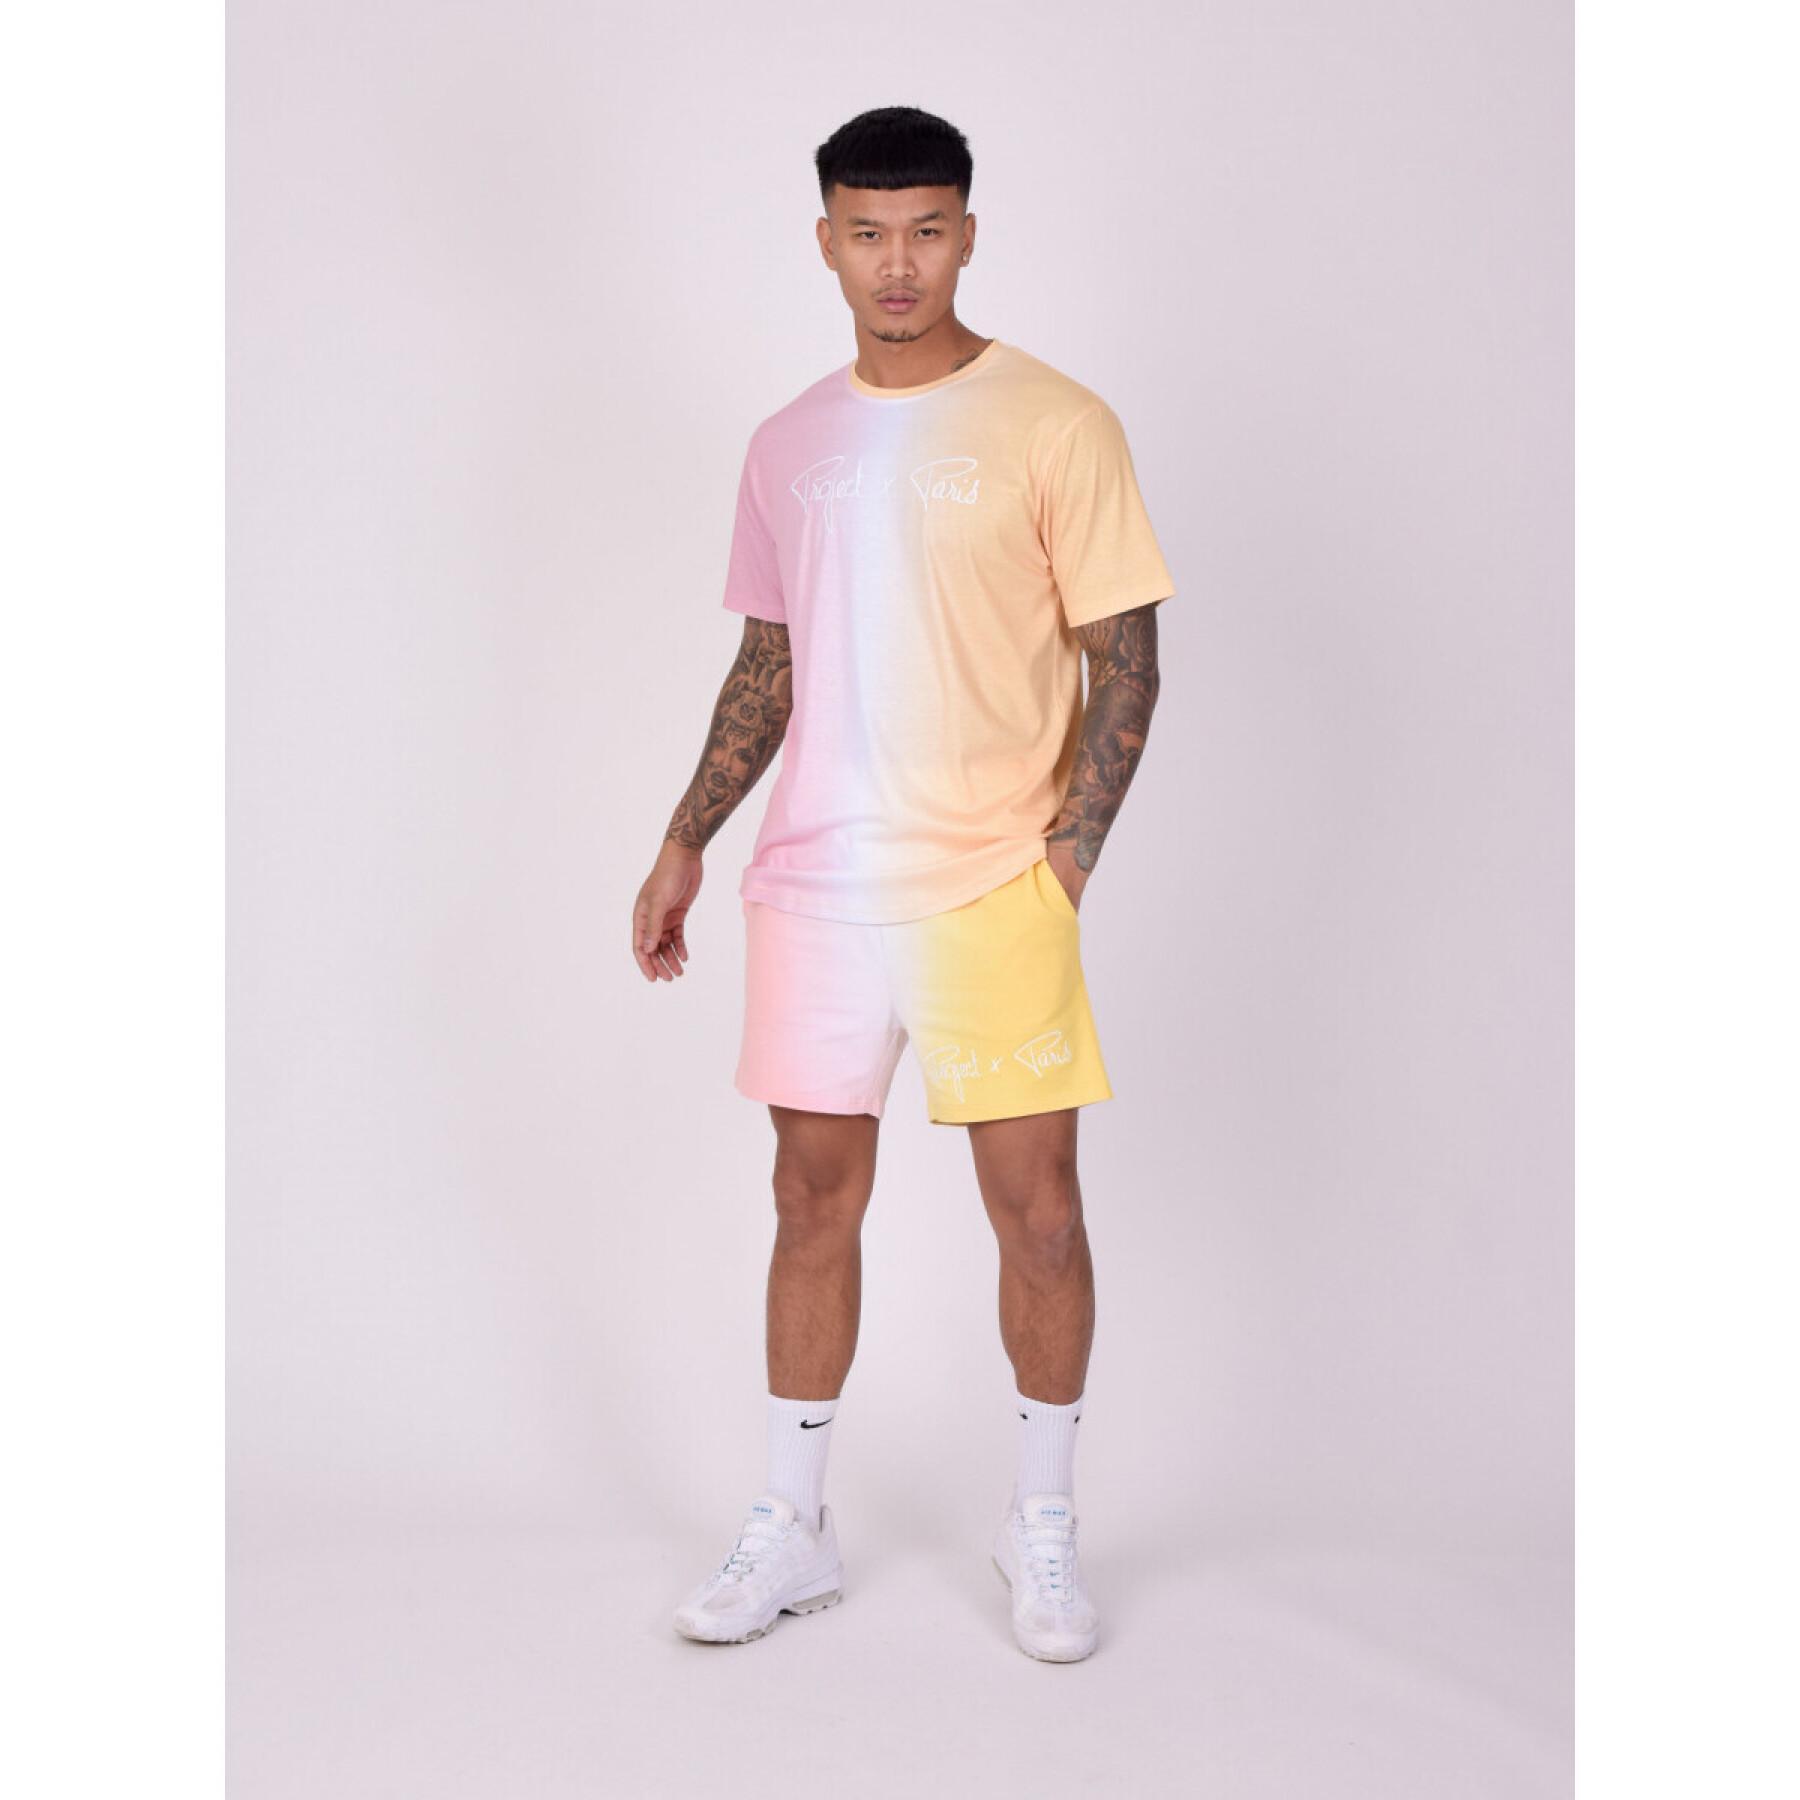 Two-tone gradient shorts Project X Paris